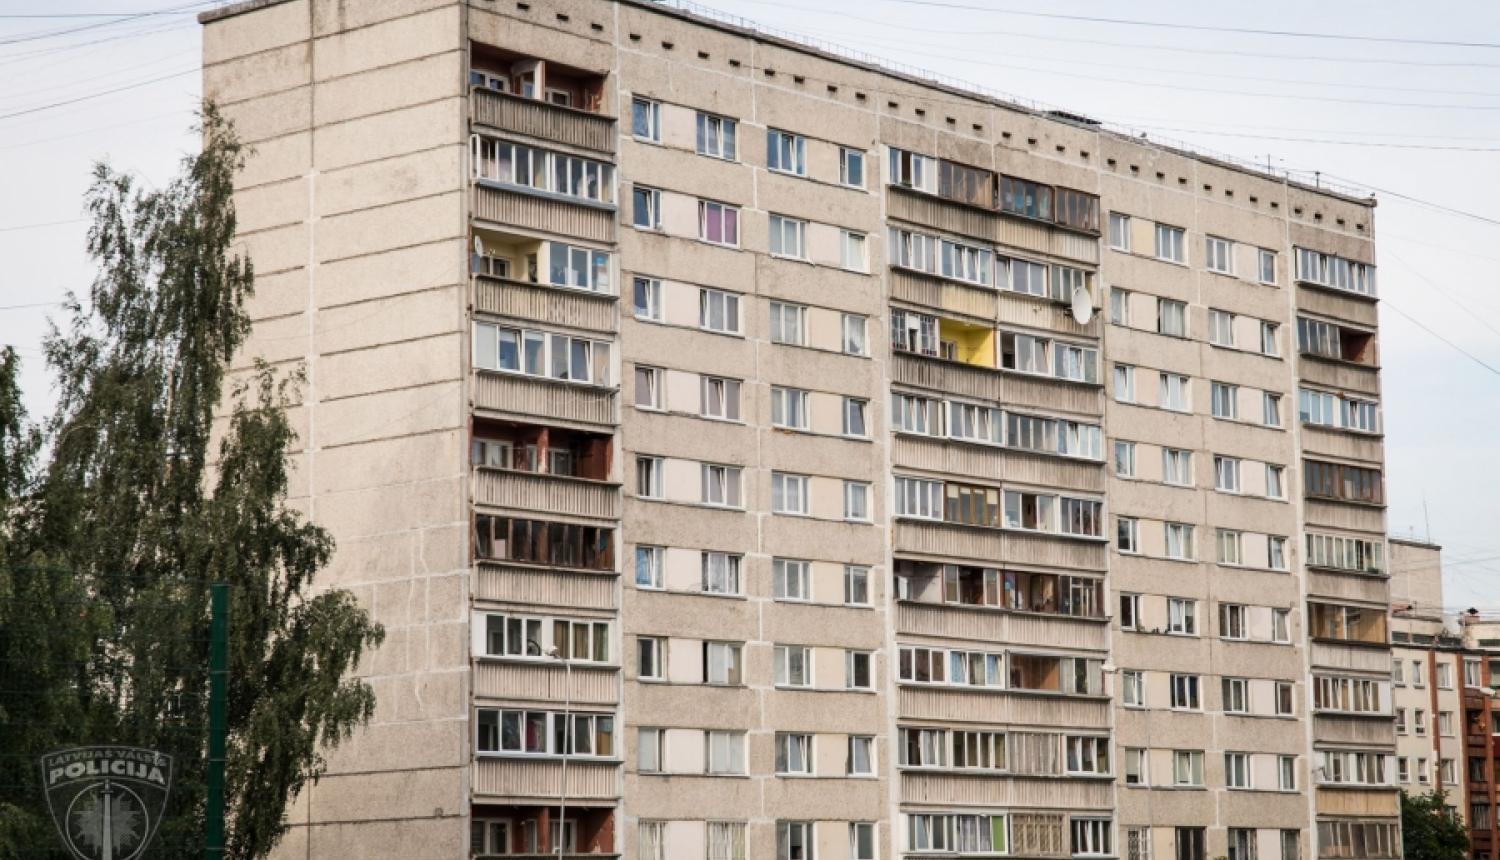 Rīgā aizdomās turētais pēc dzīvokļa aplaupīšanas izlec no piektā stāva un aizbēg